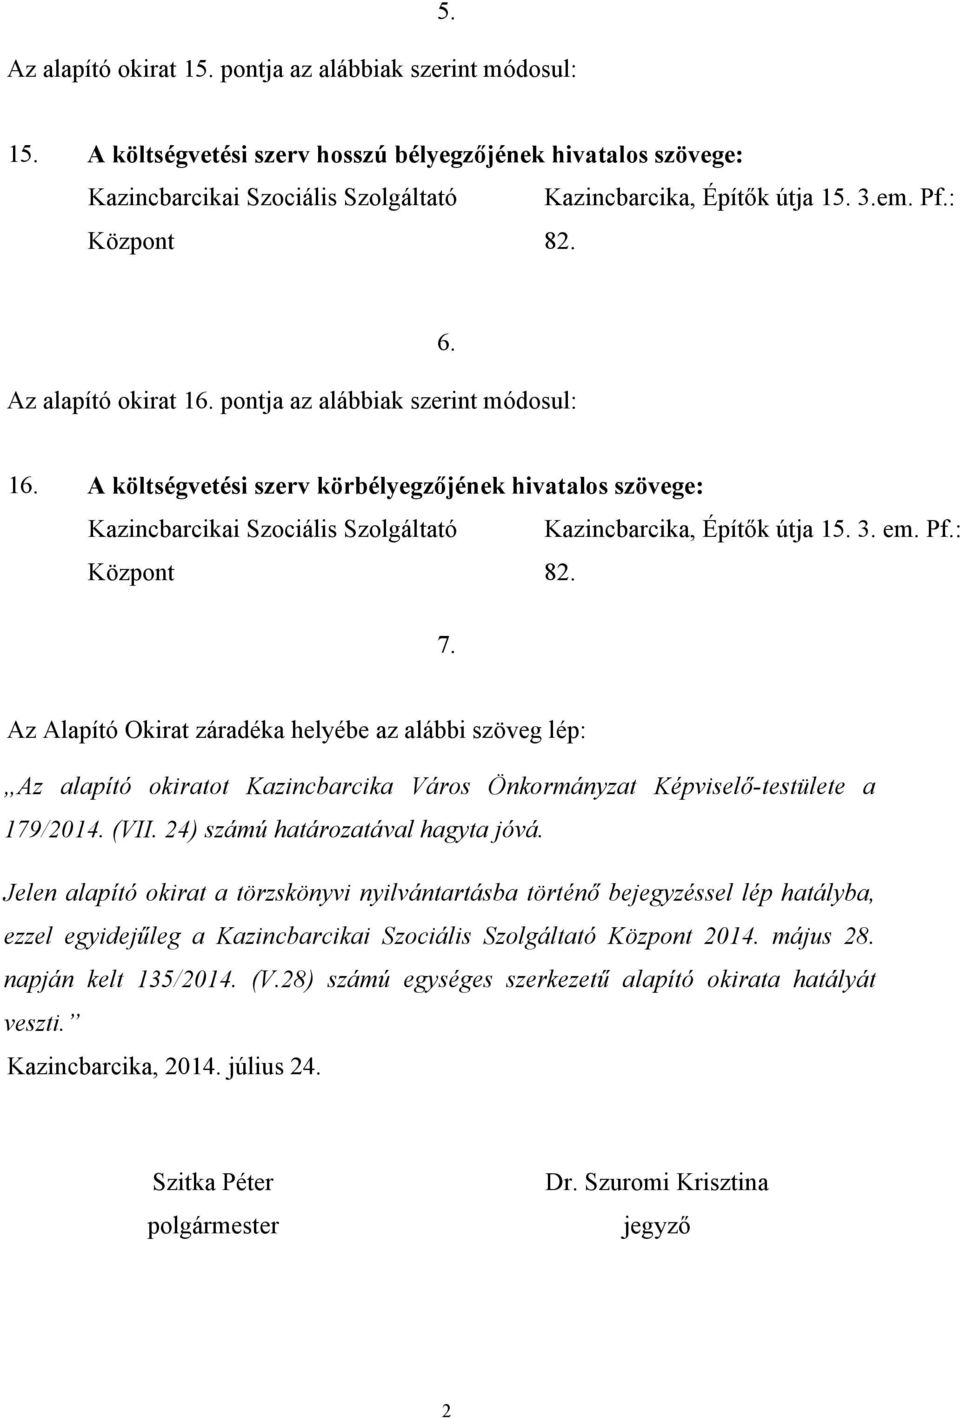 Az Alapító Okirat záradéka helyébe az alábbi szöveg lép: Az alapító okiratot Kazincbarcika Város Önkormányzat Képviselő-testülete a 179/2014. (VII. 24) számú határozatával hagyta jóvá.